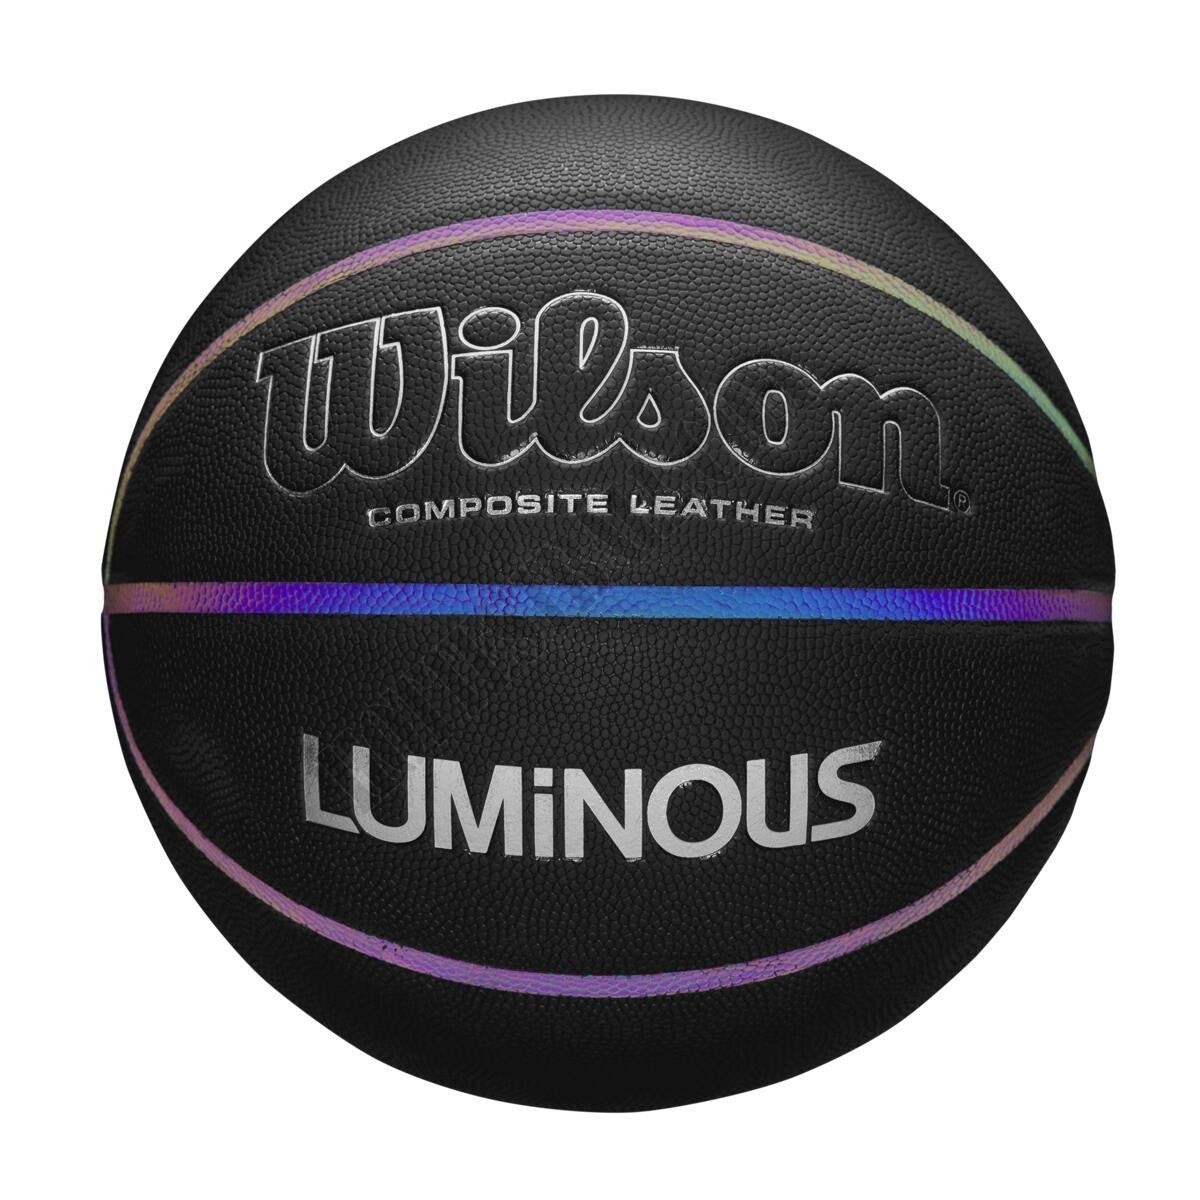 Luminous Performance Basketball - Wilson Discount Store - Luminous Performance Basketball - Wilson Discount Store